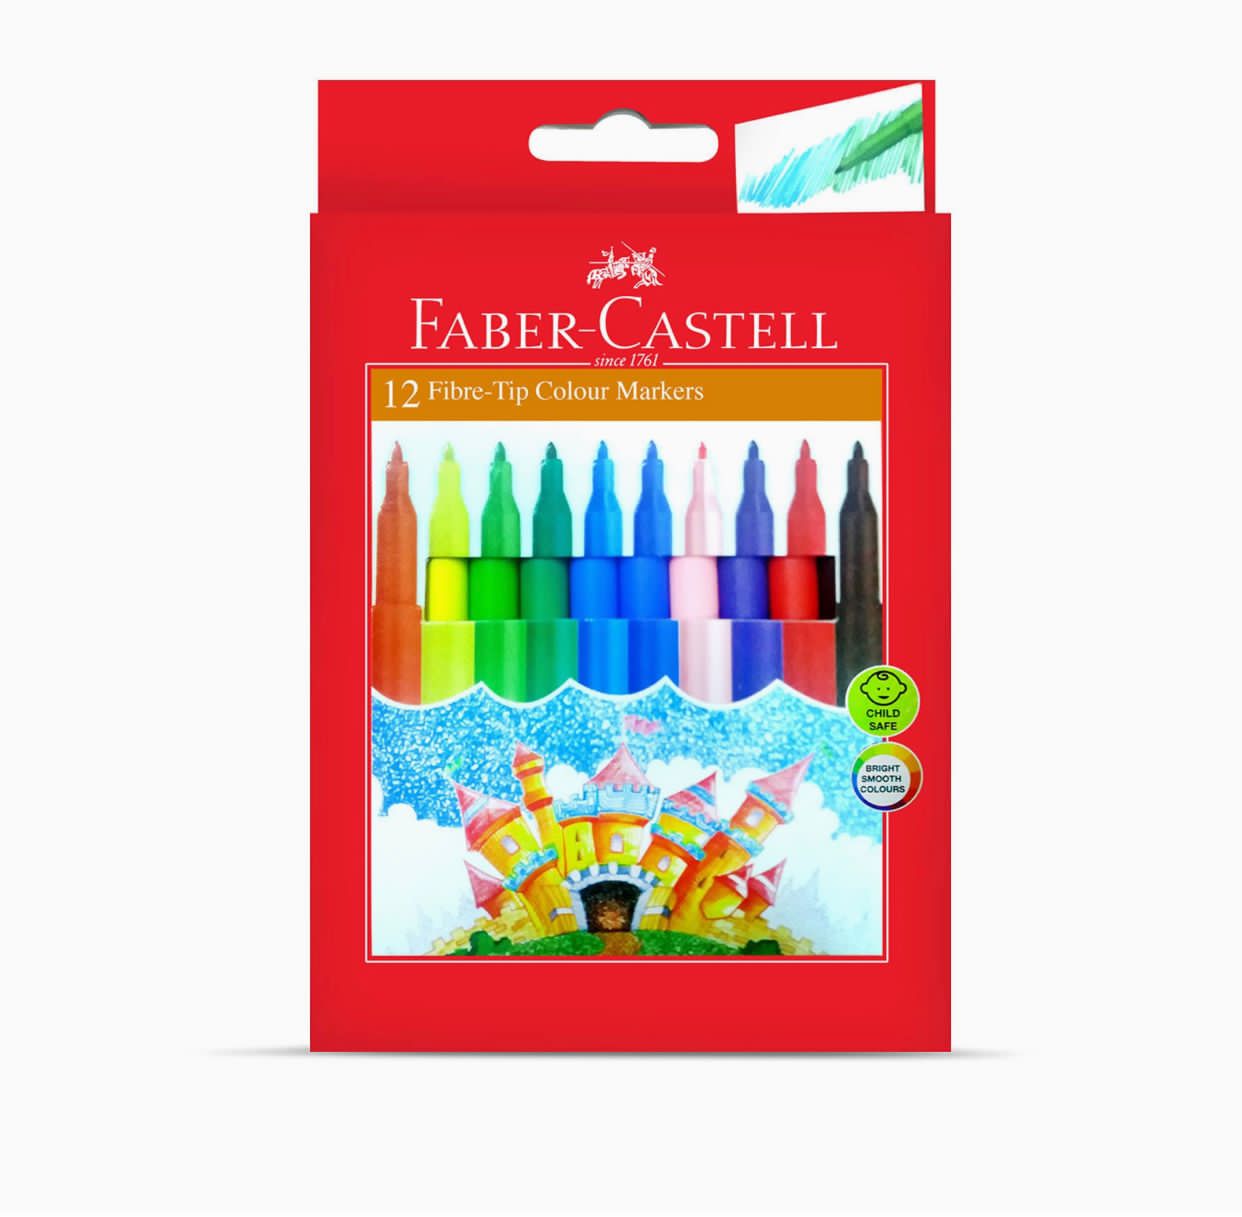 کتاب طراحی Faber Castell A4 1Pc + مداد رنگی 12 رنگ 1Pc + قلم نمدی 12 رنگ 1Pc + مداد رنگی مومی 12 رنگ 1Pc, 1909(6114) اورجینال